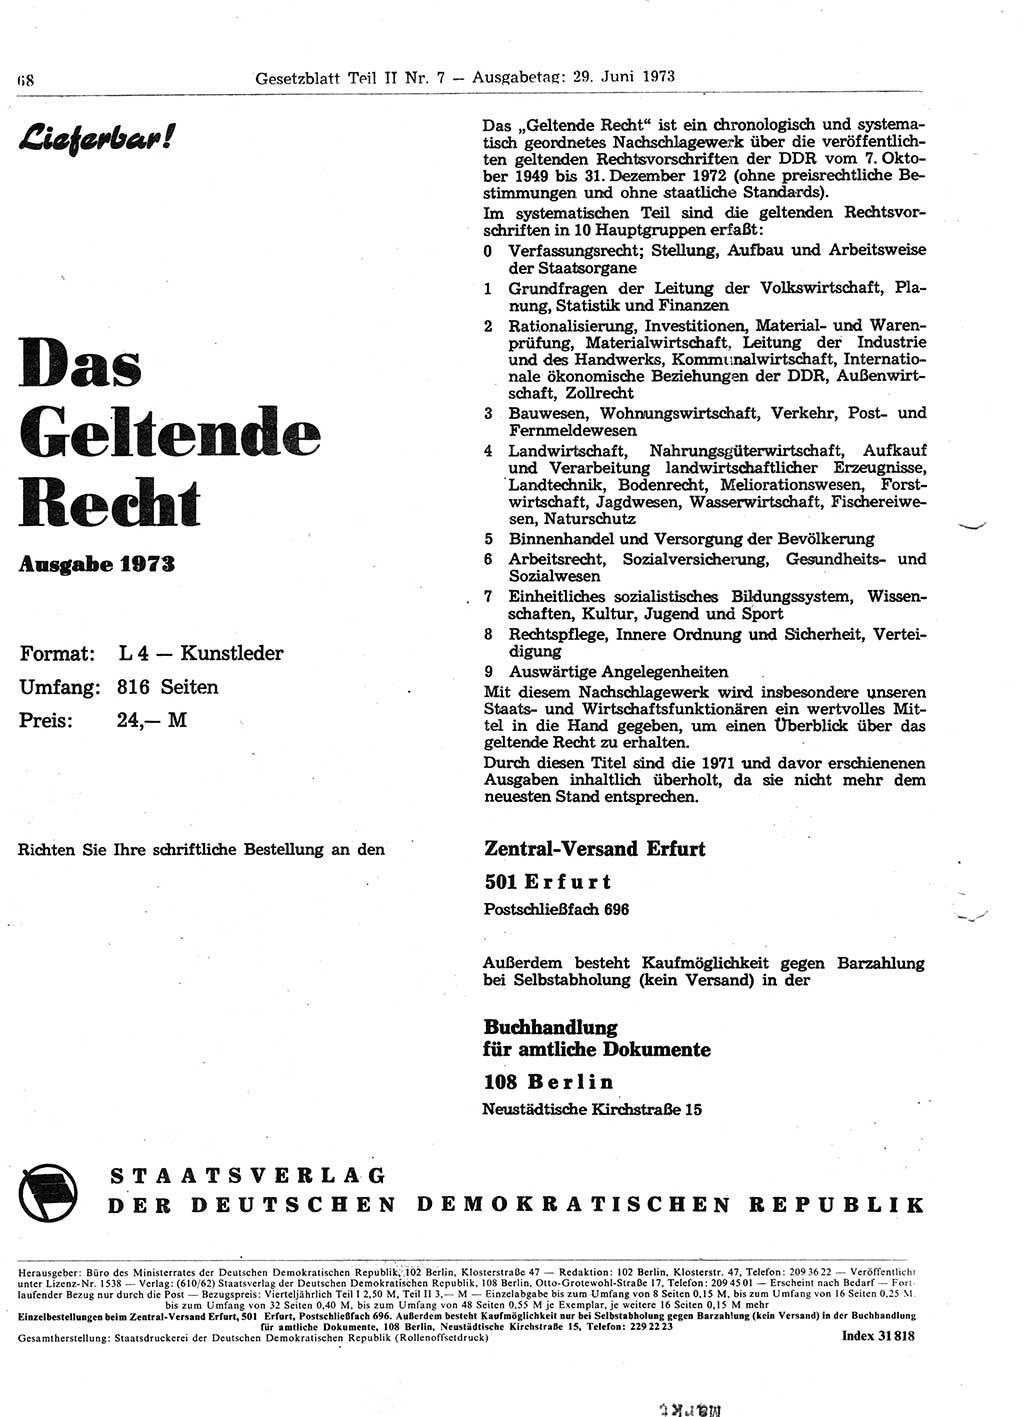 Gesetzblatt (GBl.) der Deutschen Demokratischen Republik (DDR) Teil ⅠⅠ 1973, Seite 68 (GBl. DDR ⅠⅠ 1973, S. 68)